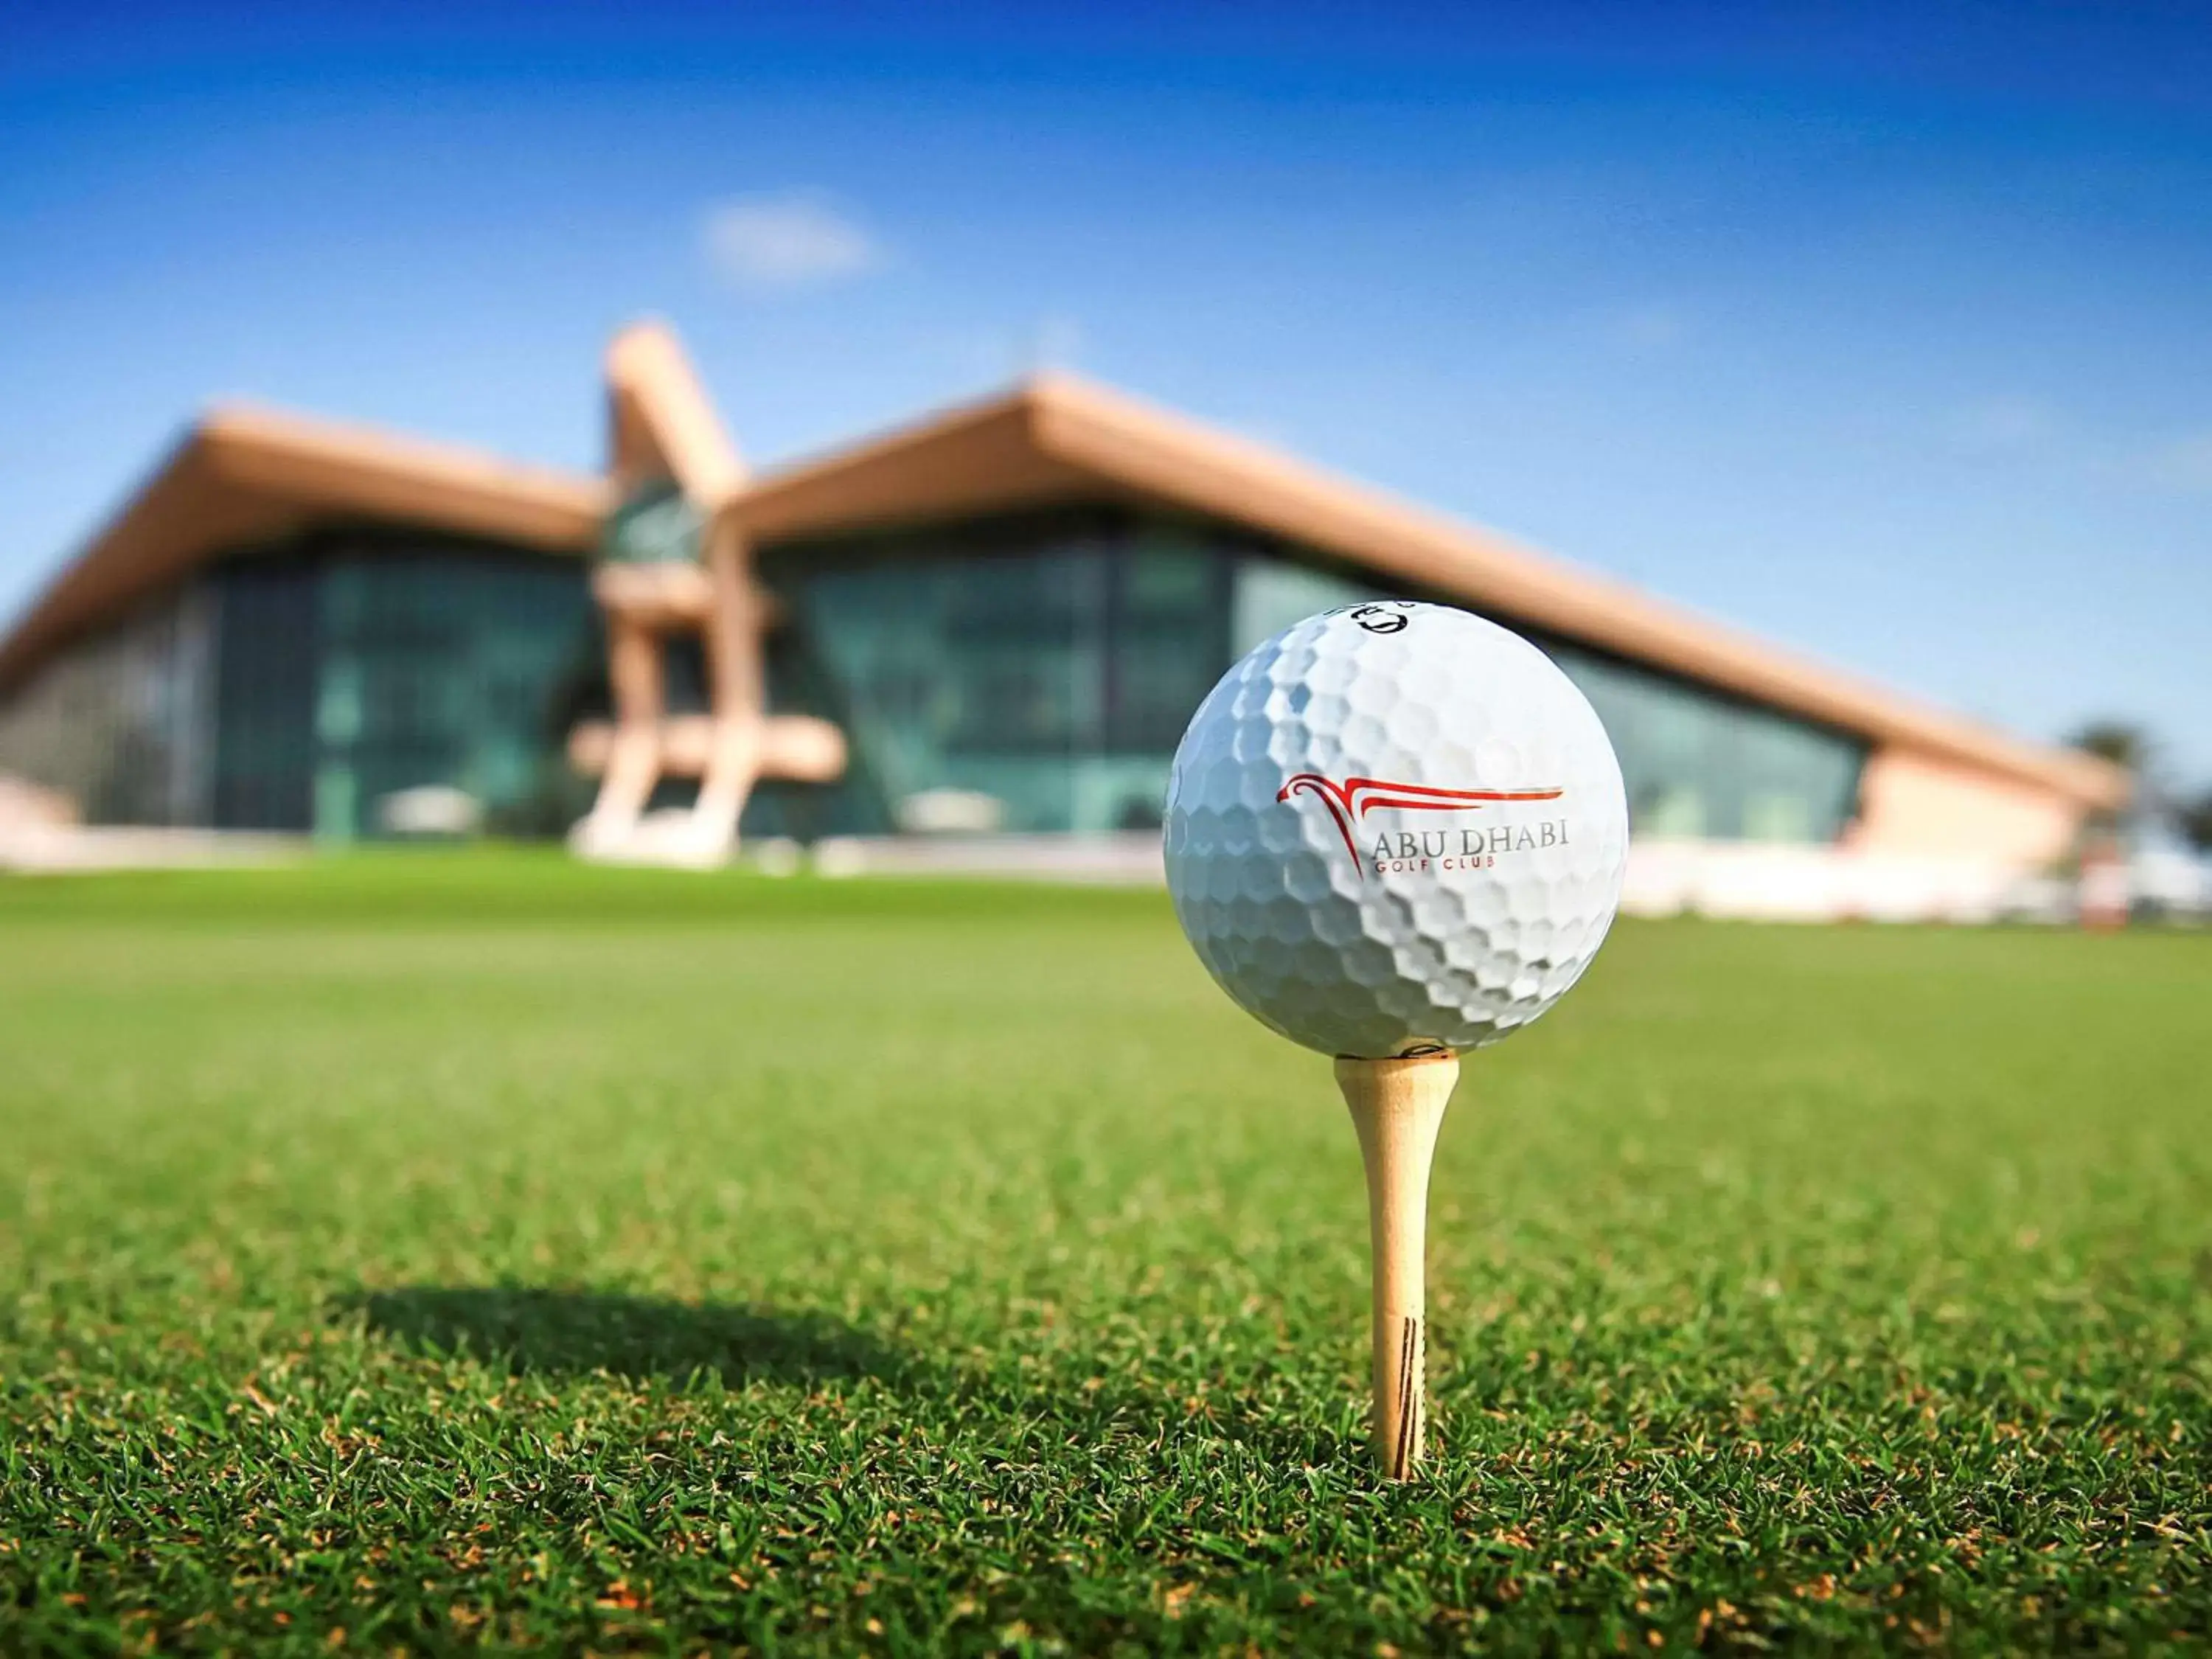 On site, Golf in Adagio Abu Dhabi Al Bustan